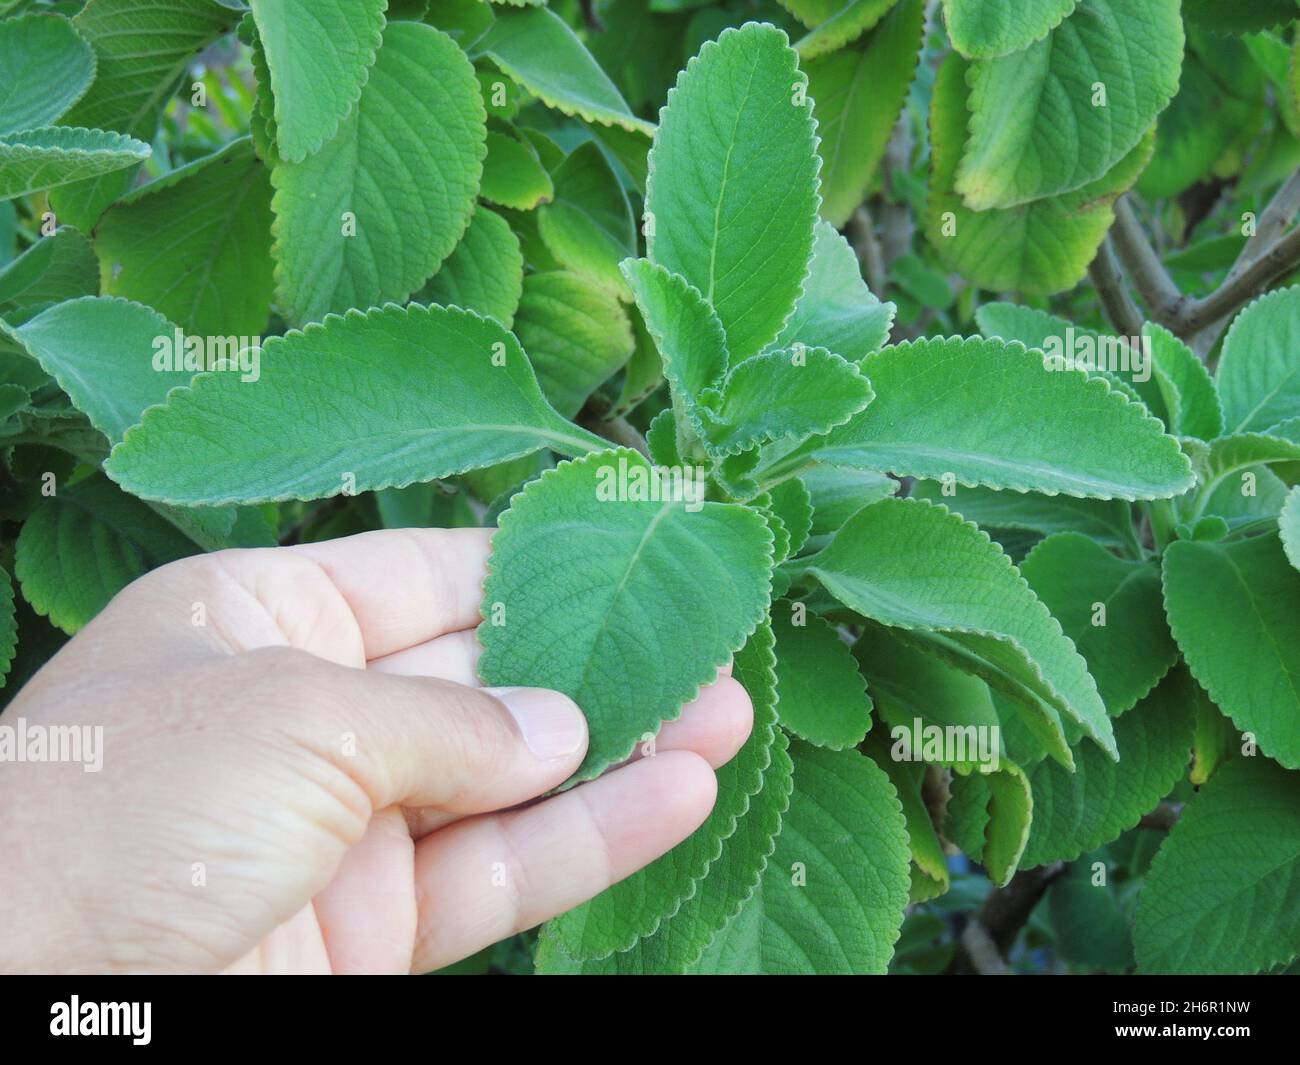 salvador, bahia, brazil - november 12, 2021: hand holding branch of boldo plant - Plectranthus barbatus - in a vegetable garden in Salvador city. Stock Photo